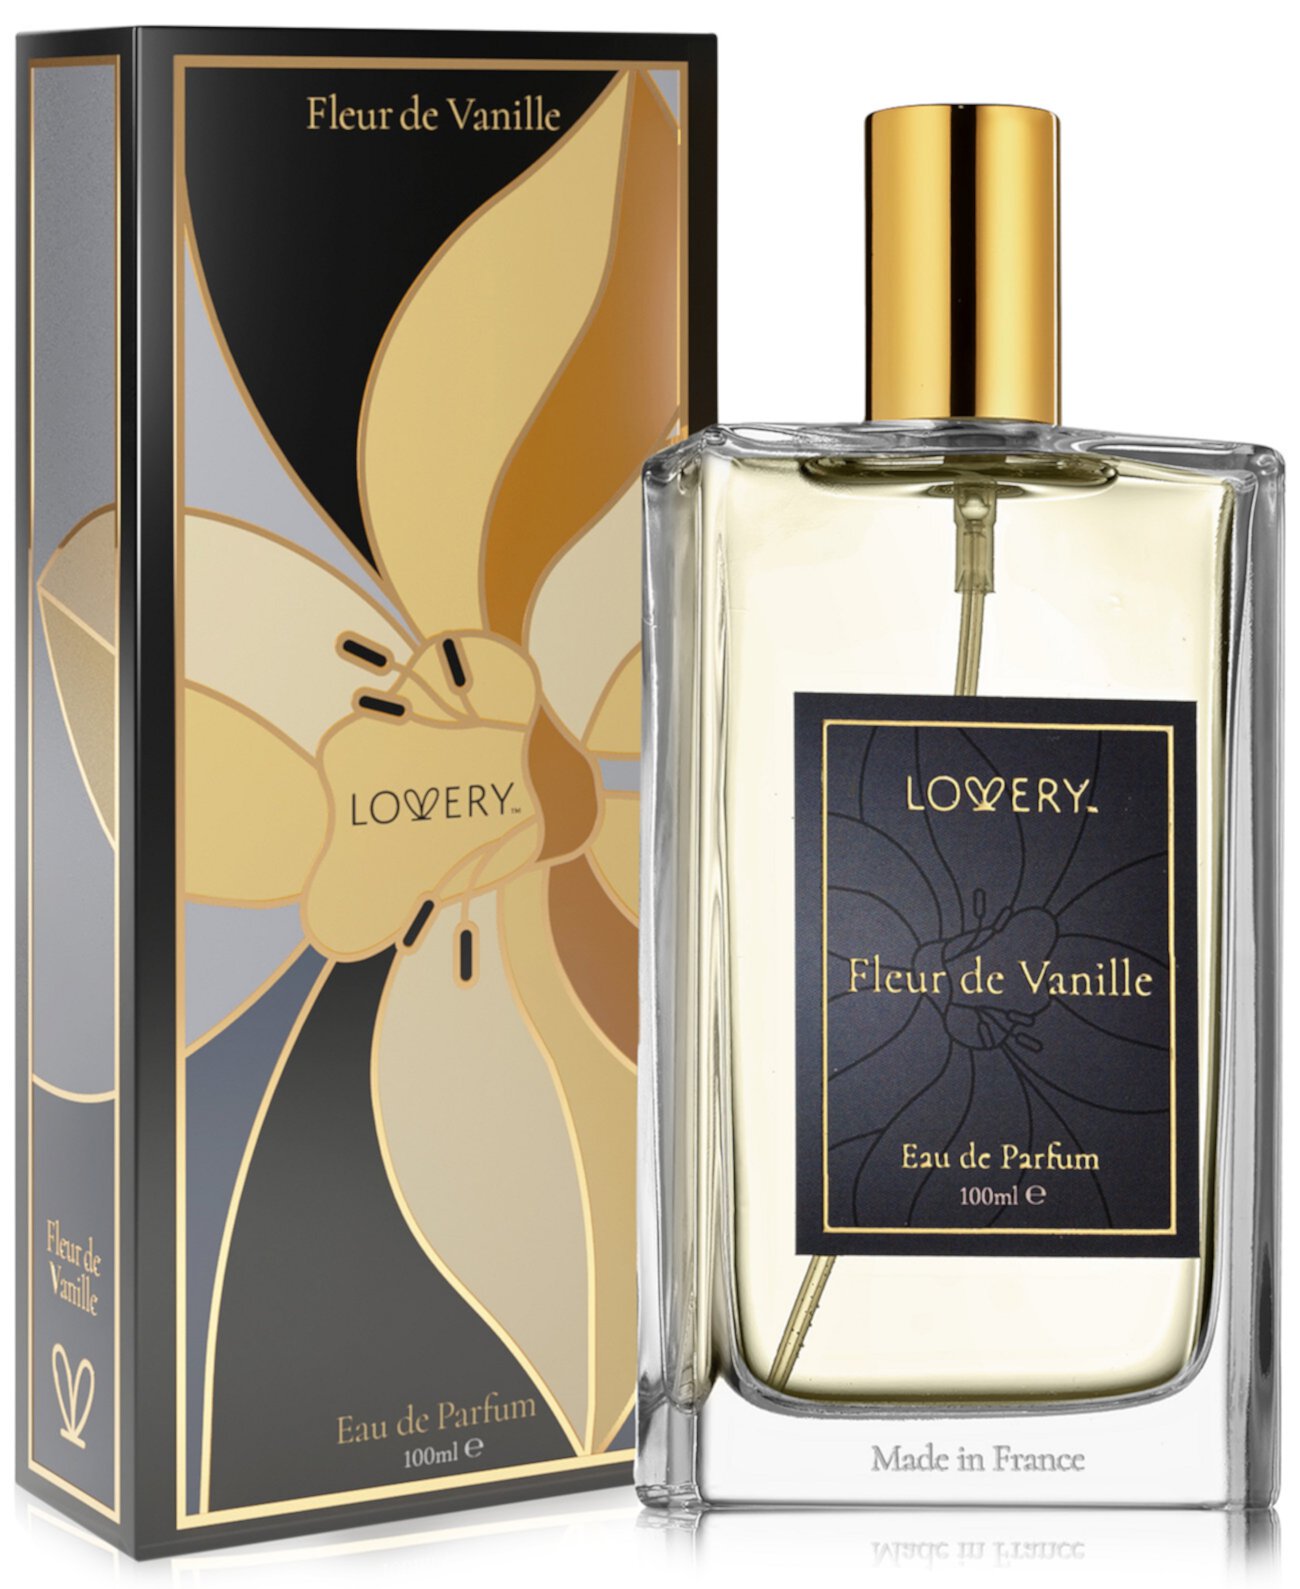 Fleur de Vanille Eau de Parfum, 3.4 oz. Lovery